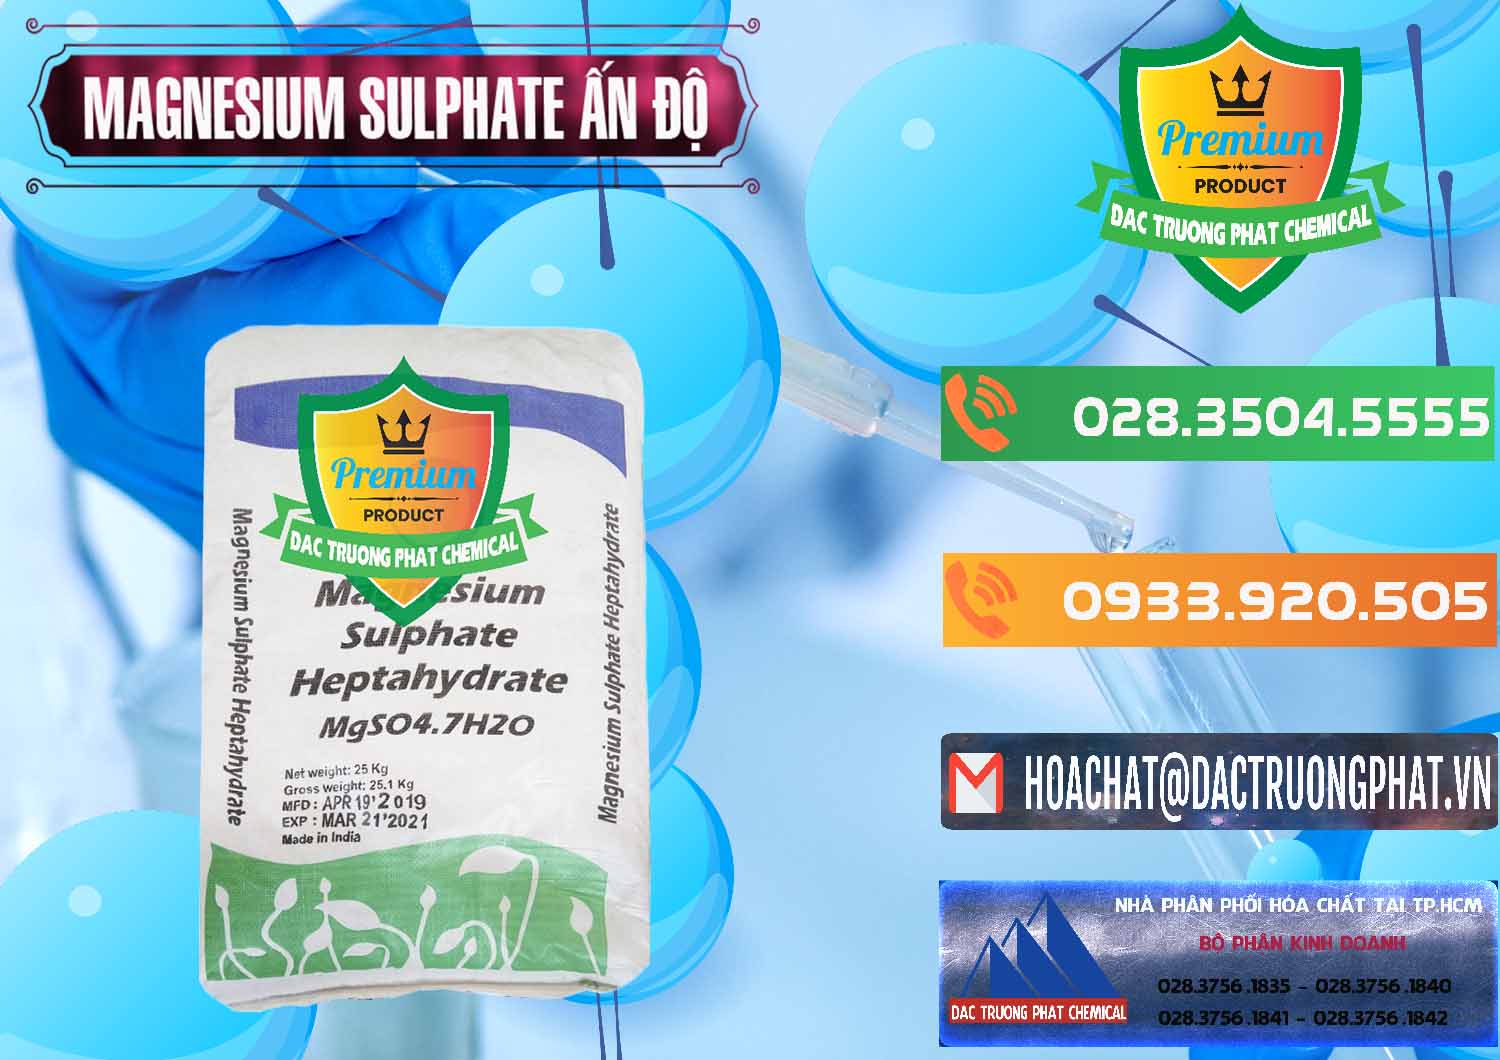 Chuyên bán - cung cấp MGSO4.7H2O – Magnesium Sulphate Heptahydrate Ấn Độ India - 0362 - Nhà cung ứng & phân phối hóa chất tại TP.HCM - hoachatxulynuoc.com.vn